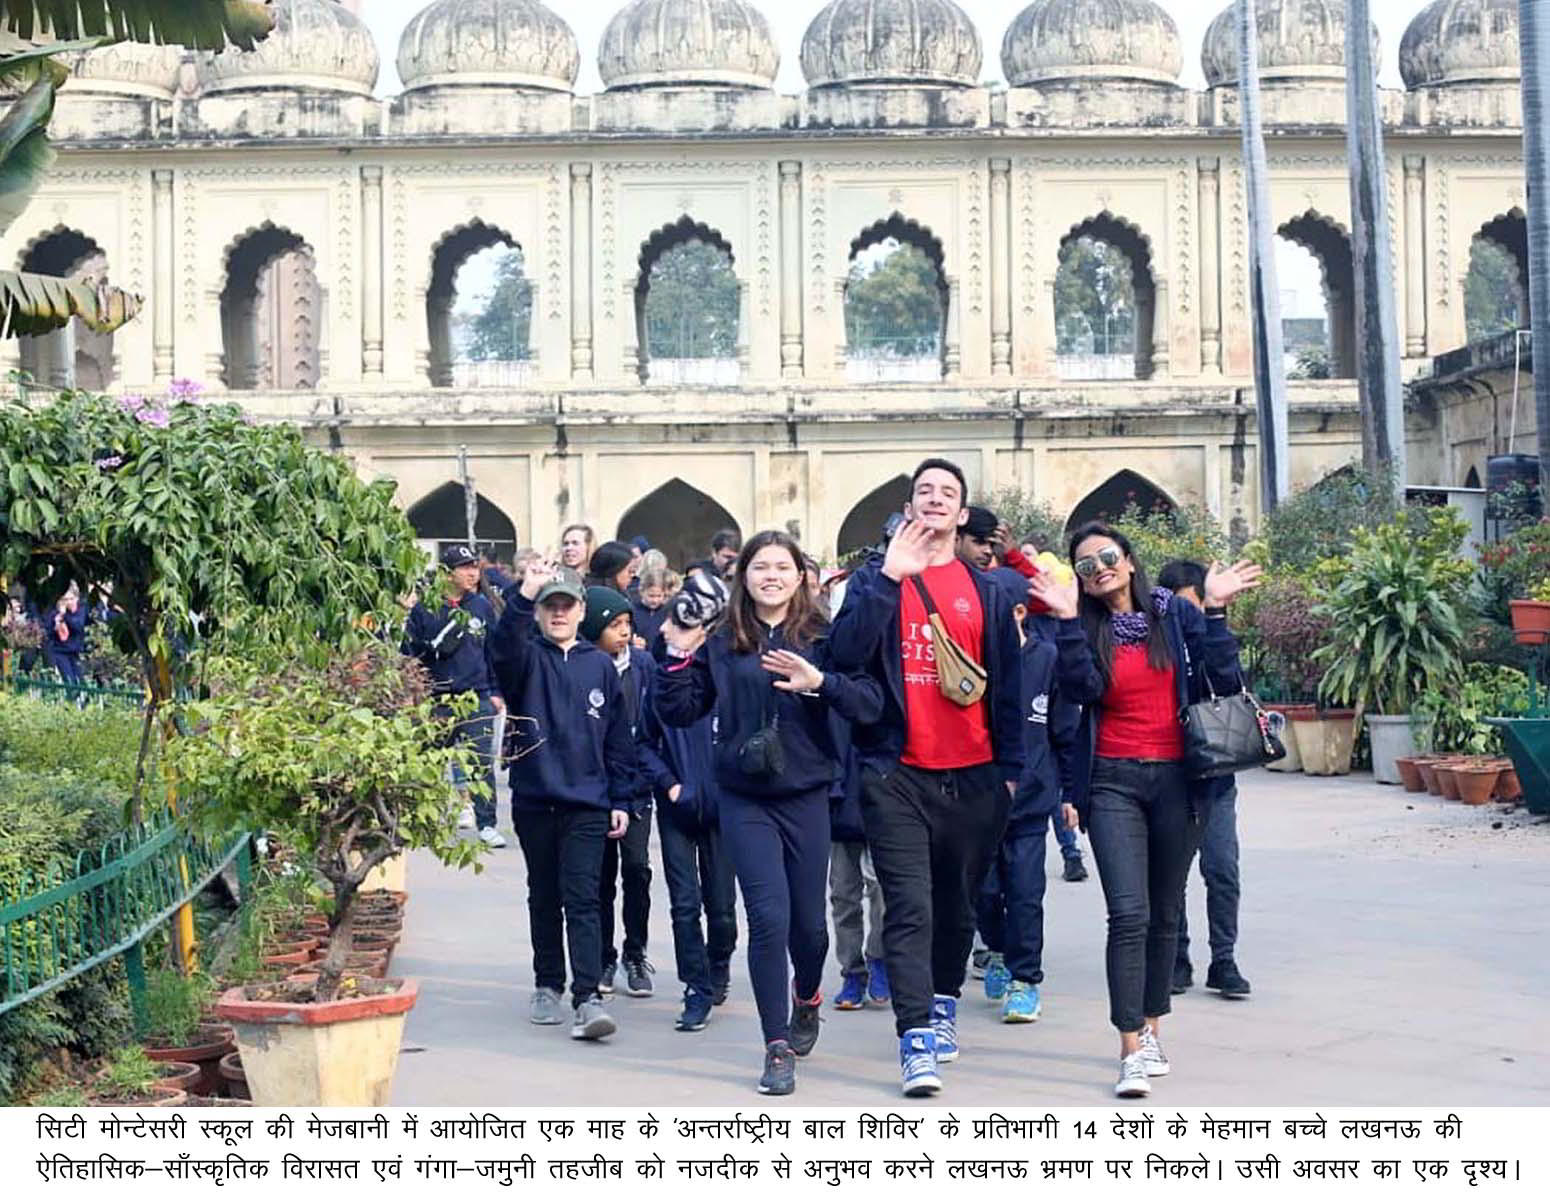 लखनऊ की ऐतिहासिक इमारतों एवं साँस्कृतिक विरासत देख गद्गद् हुए 14 देशों के विदेशी छात्र - हरि ओम शर्मा